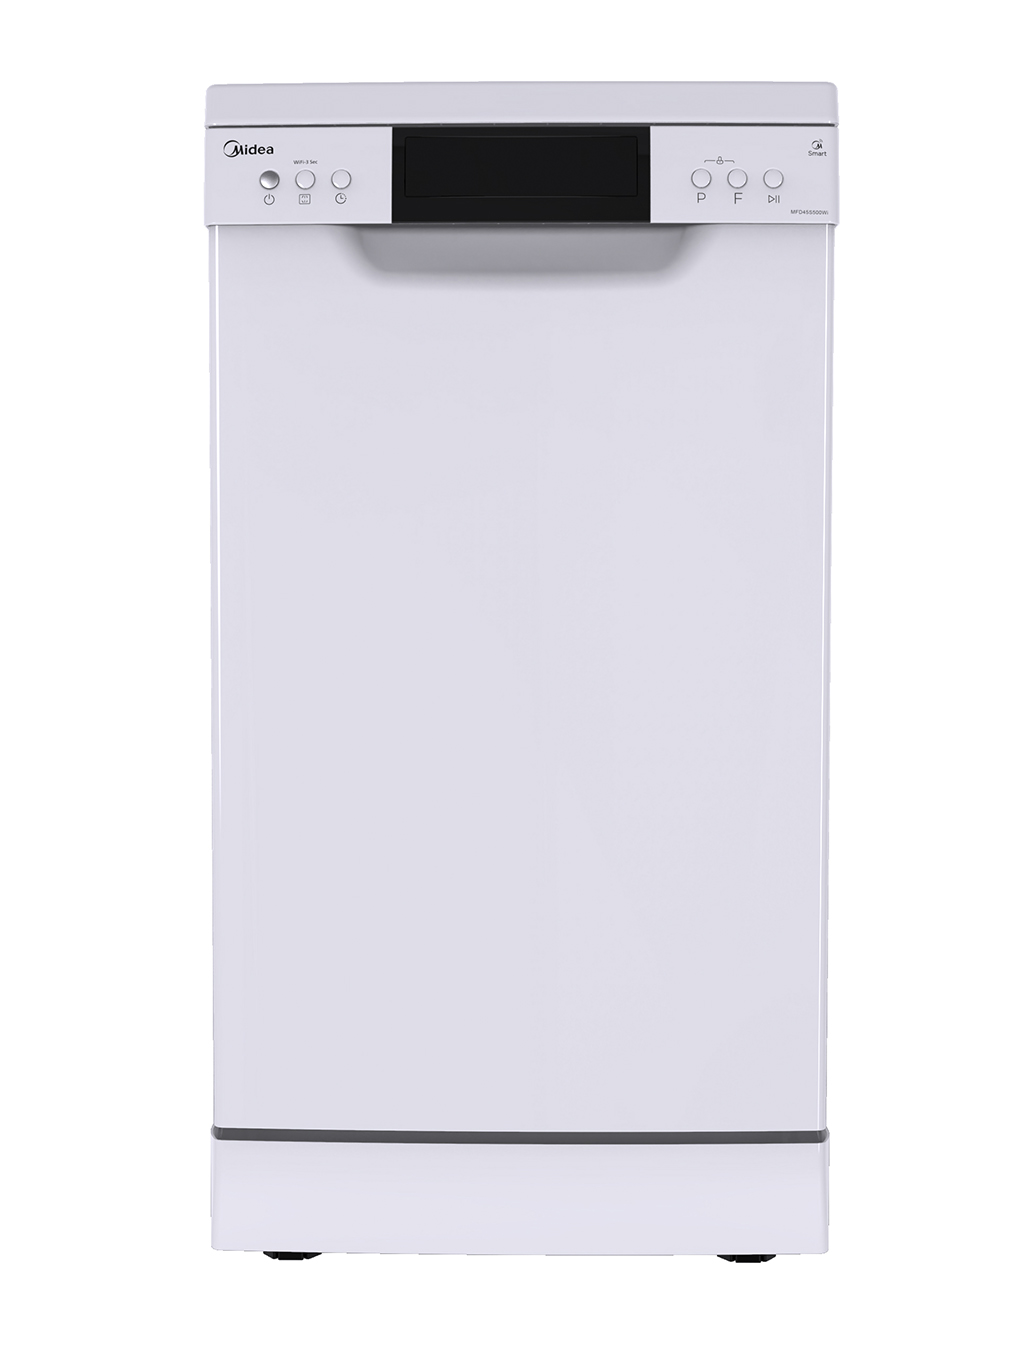 Посудомоечная машина Midea Mfd45s500wi, цвет белый